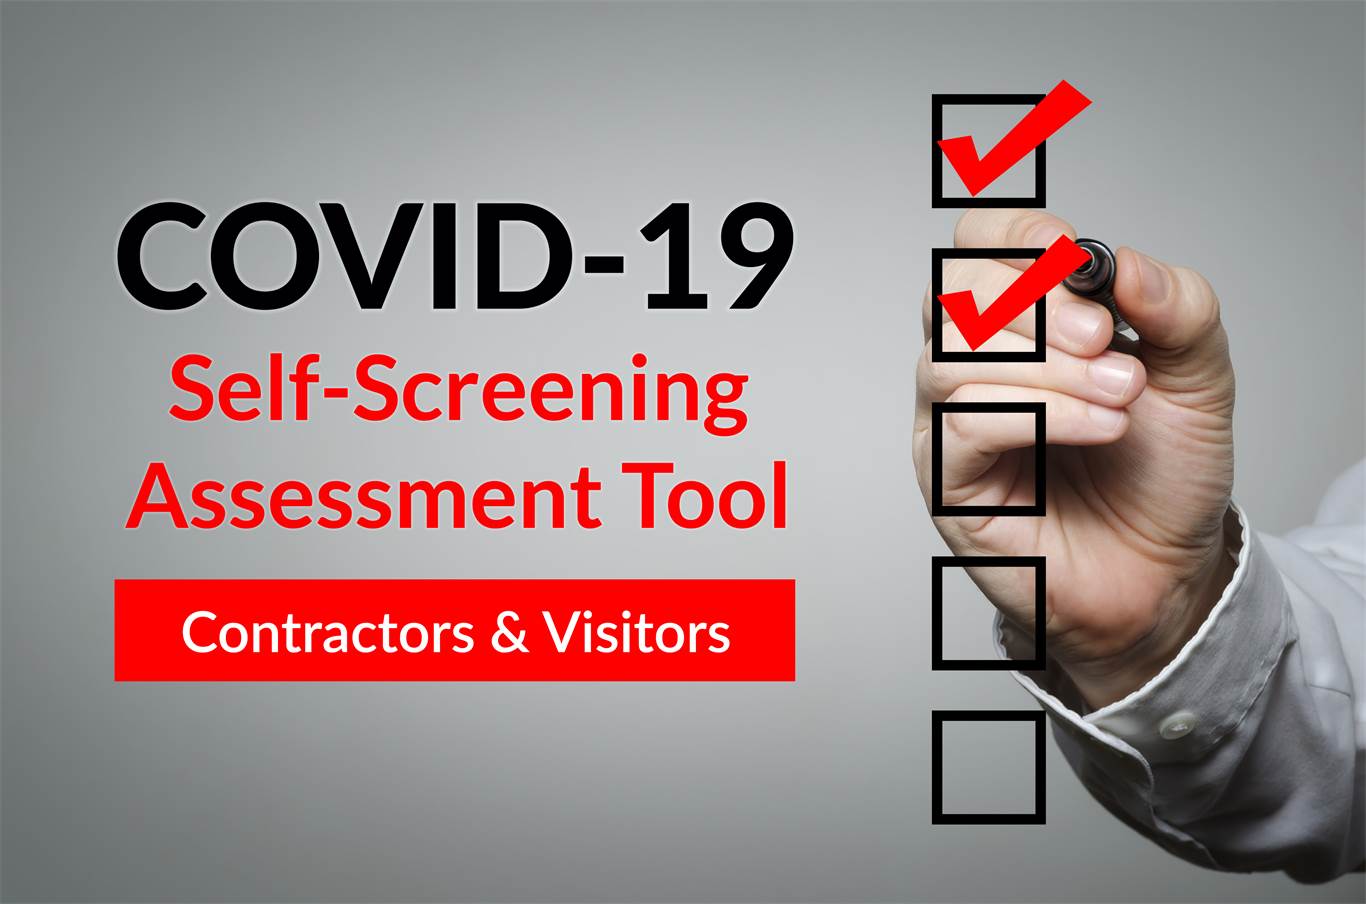 COVID-19 Self-Screening Assessment Tool - Contractors & Visitors